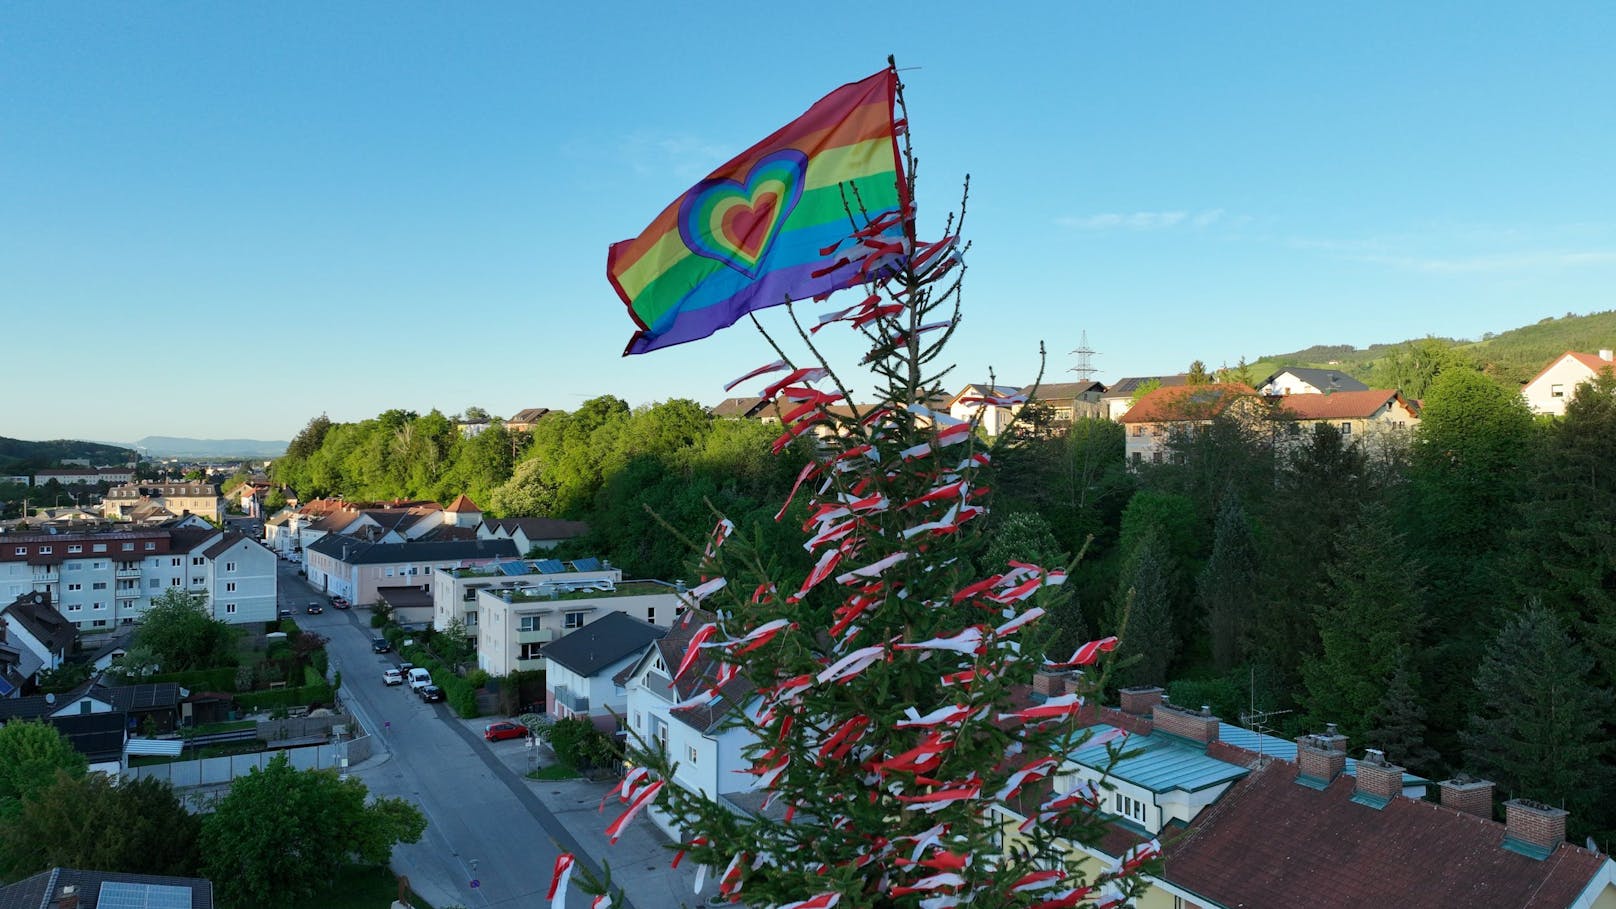 Regenbogenflagge am Maibaum, Dorfbewohner nicht erfreut